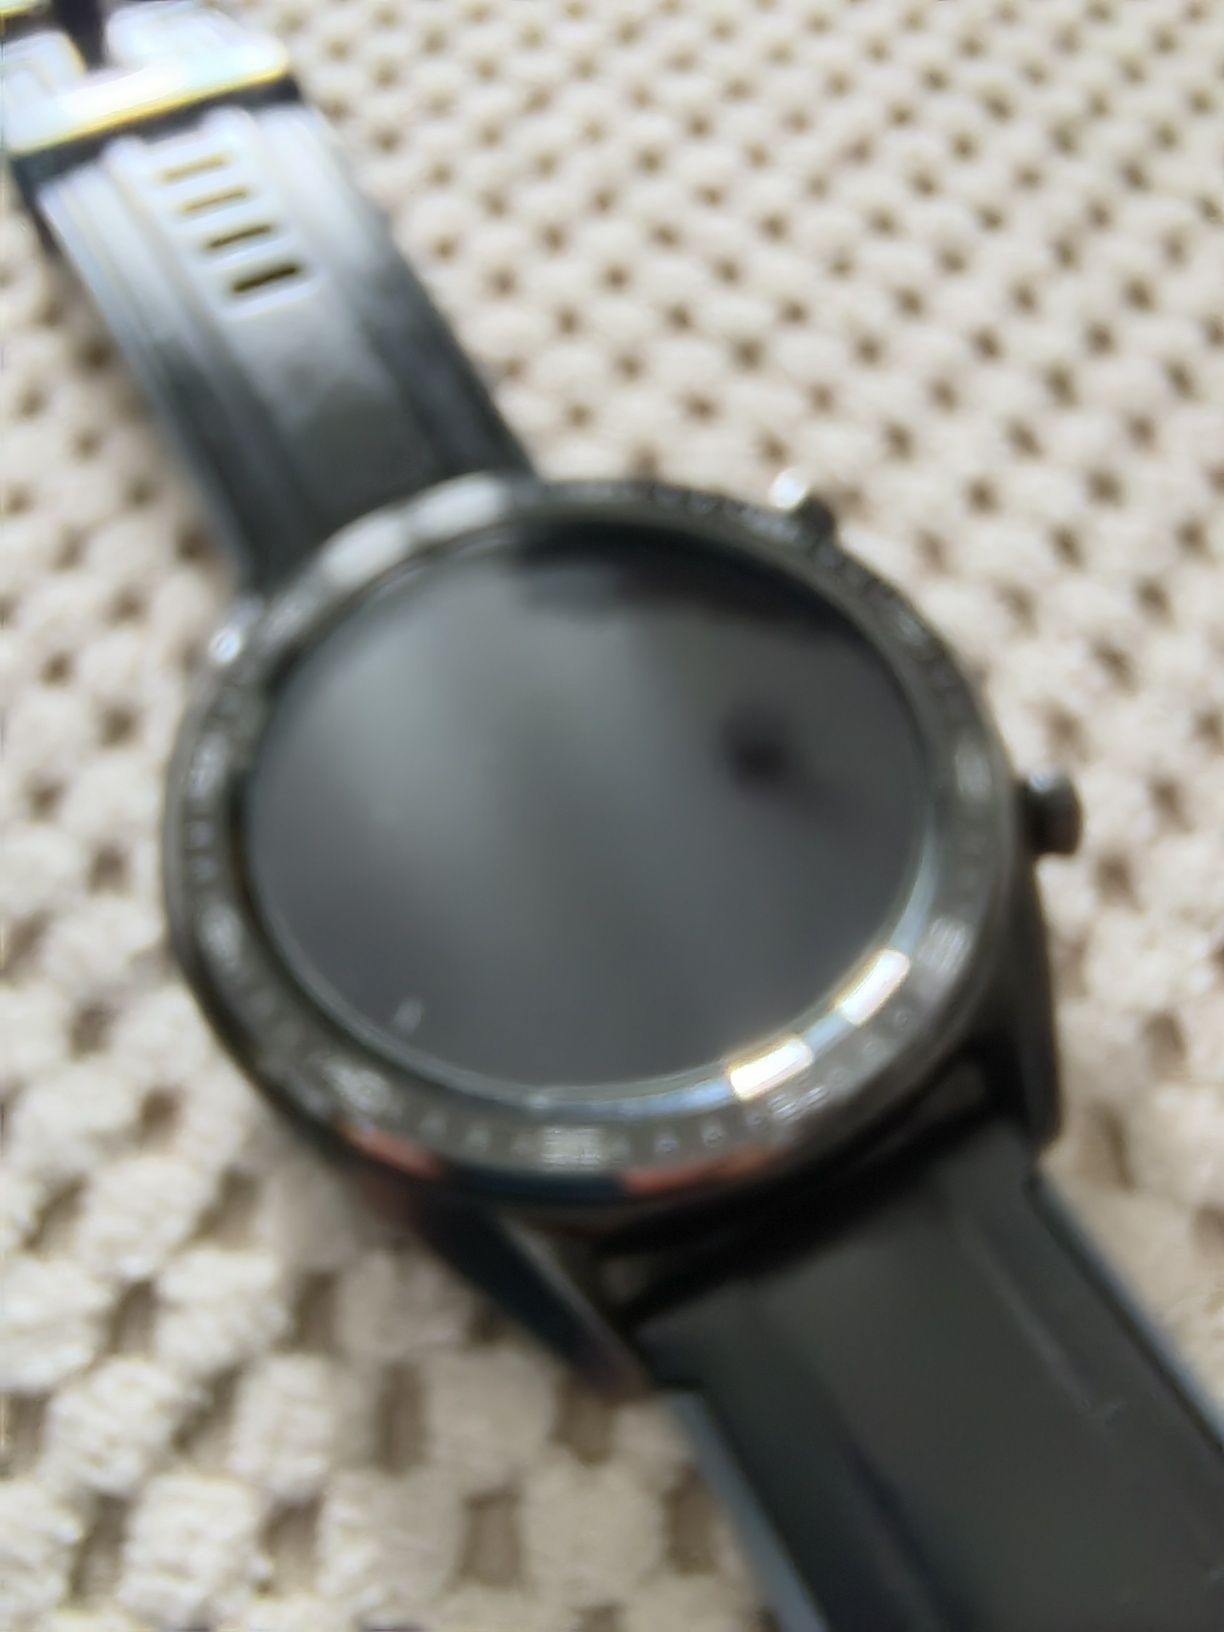 Zegarek Huawei watch GT jak nowy